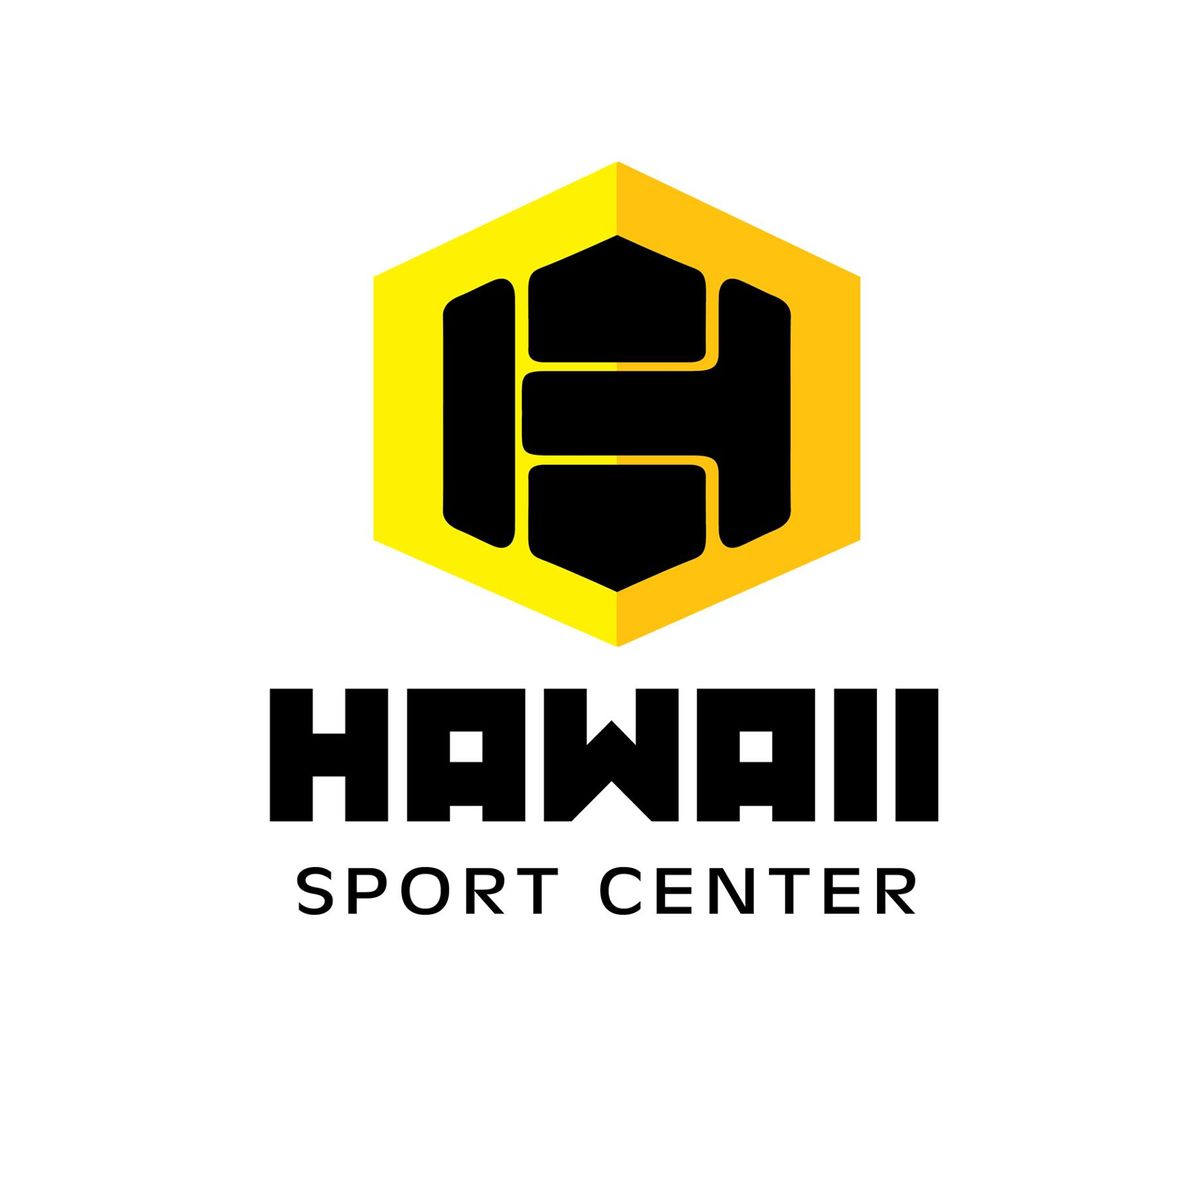 Талбайн Теннисээр сургалт явуулдаг "Хавай" спорт центерт хичээллэхийг хүсвэл MSPORTS app-аар дамжуулан бүртгэлээ хийлгээрэй.
Утас: +976 9006 2211
Хаяг: Баянгол дүүрэг ДЦС4-с урагш 0.6km